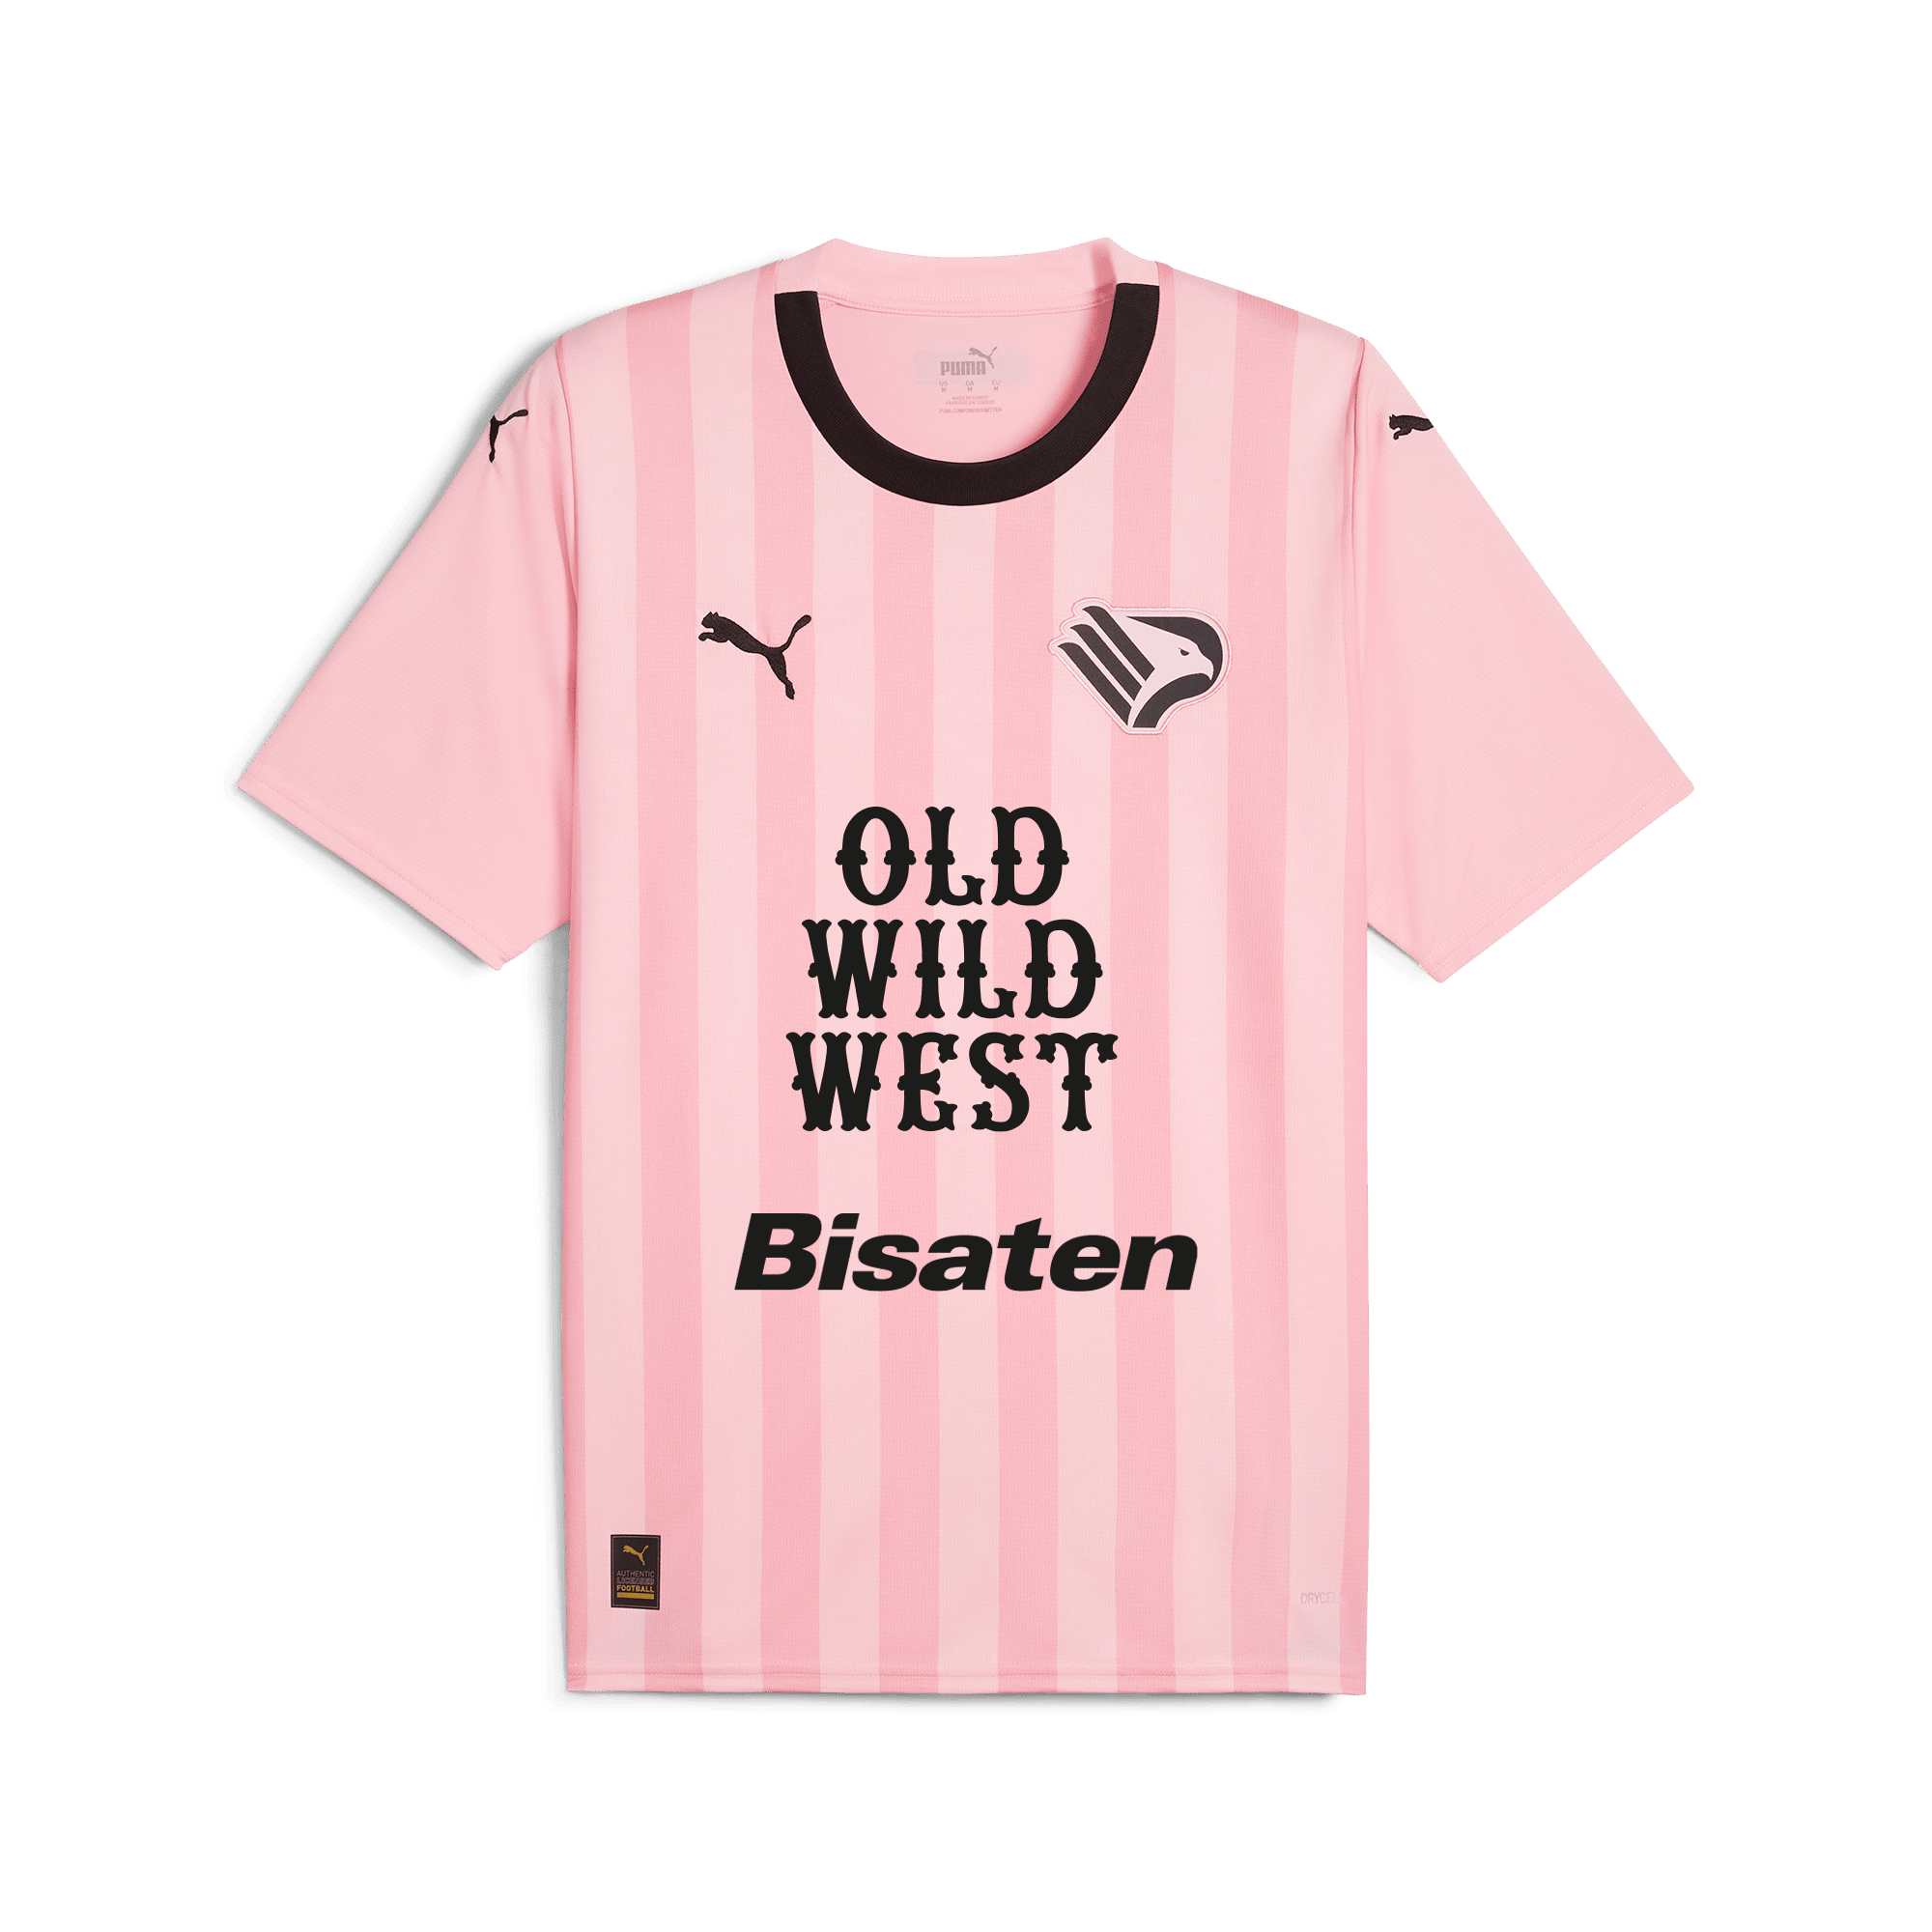 Palermo Football Kits, Cheap Shirts & Shorts